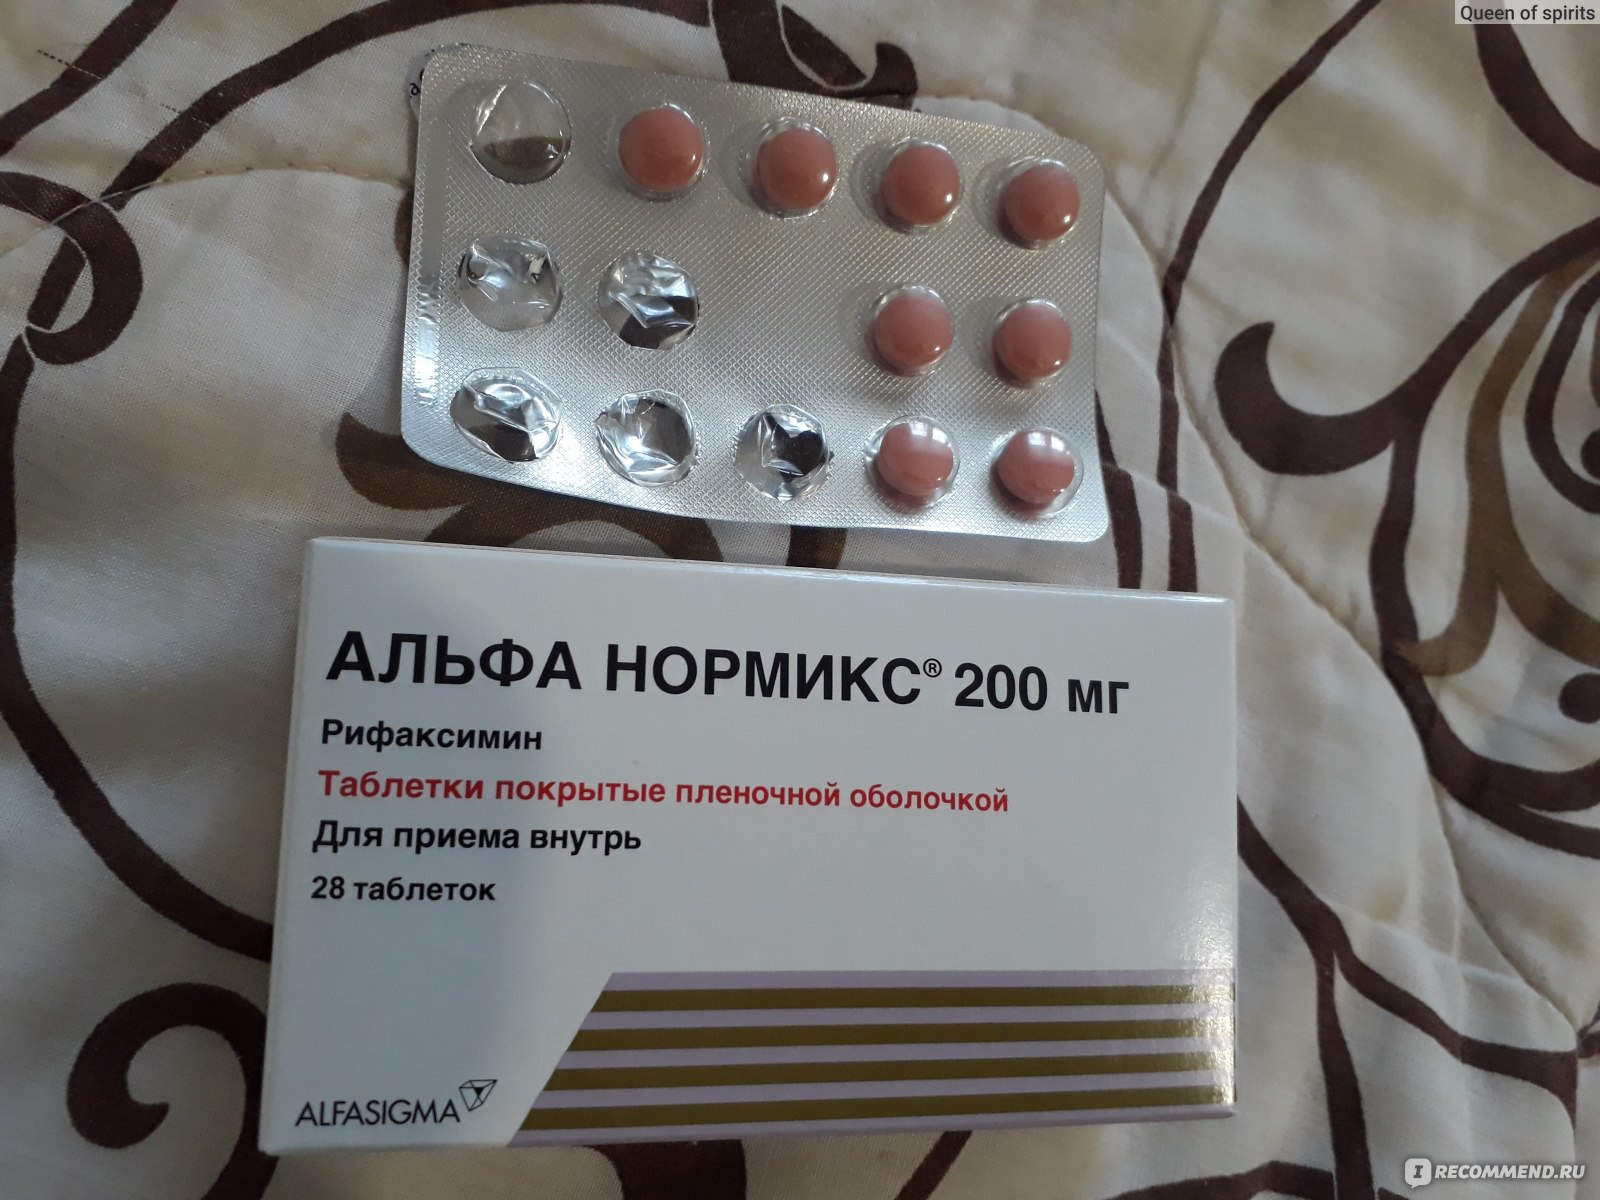 Альфа нормикс это антибиотик. Таблетки Альфа Нормикс 200. Альфа Нормикс 24 таблетки. Альфа Нормикс капли. Антибиотик для кишечника Альфа Нормикс.